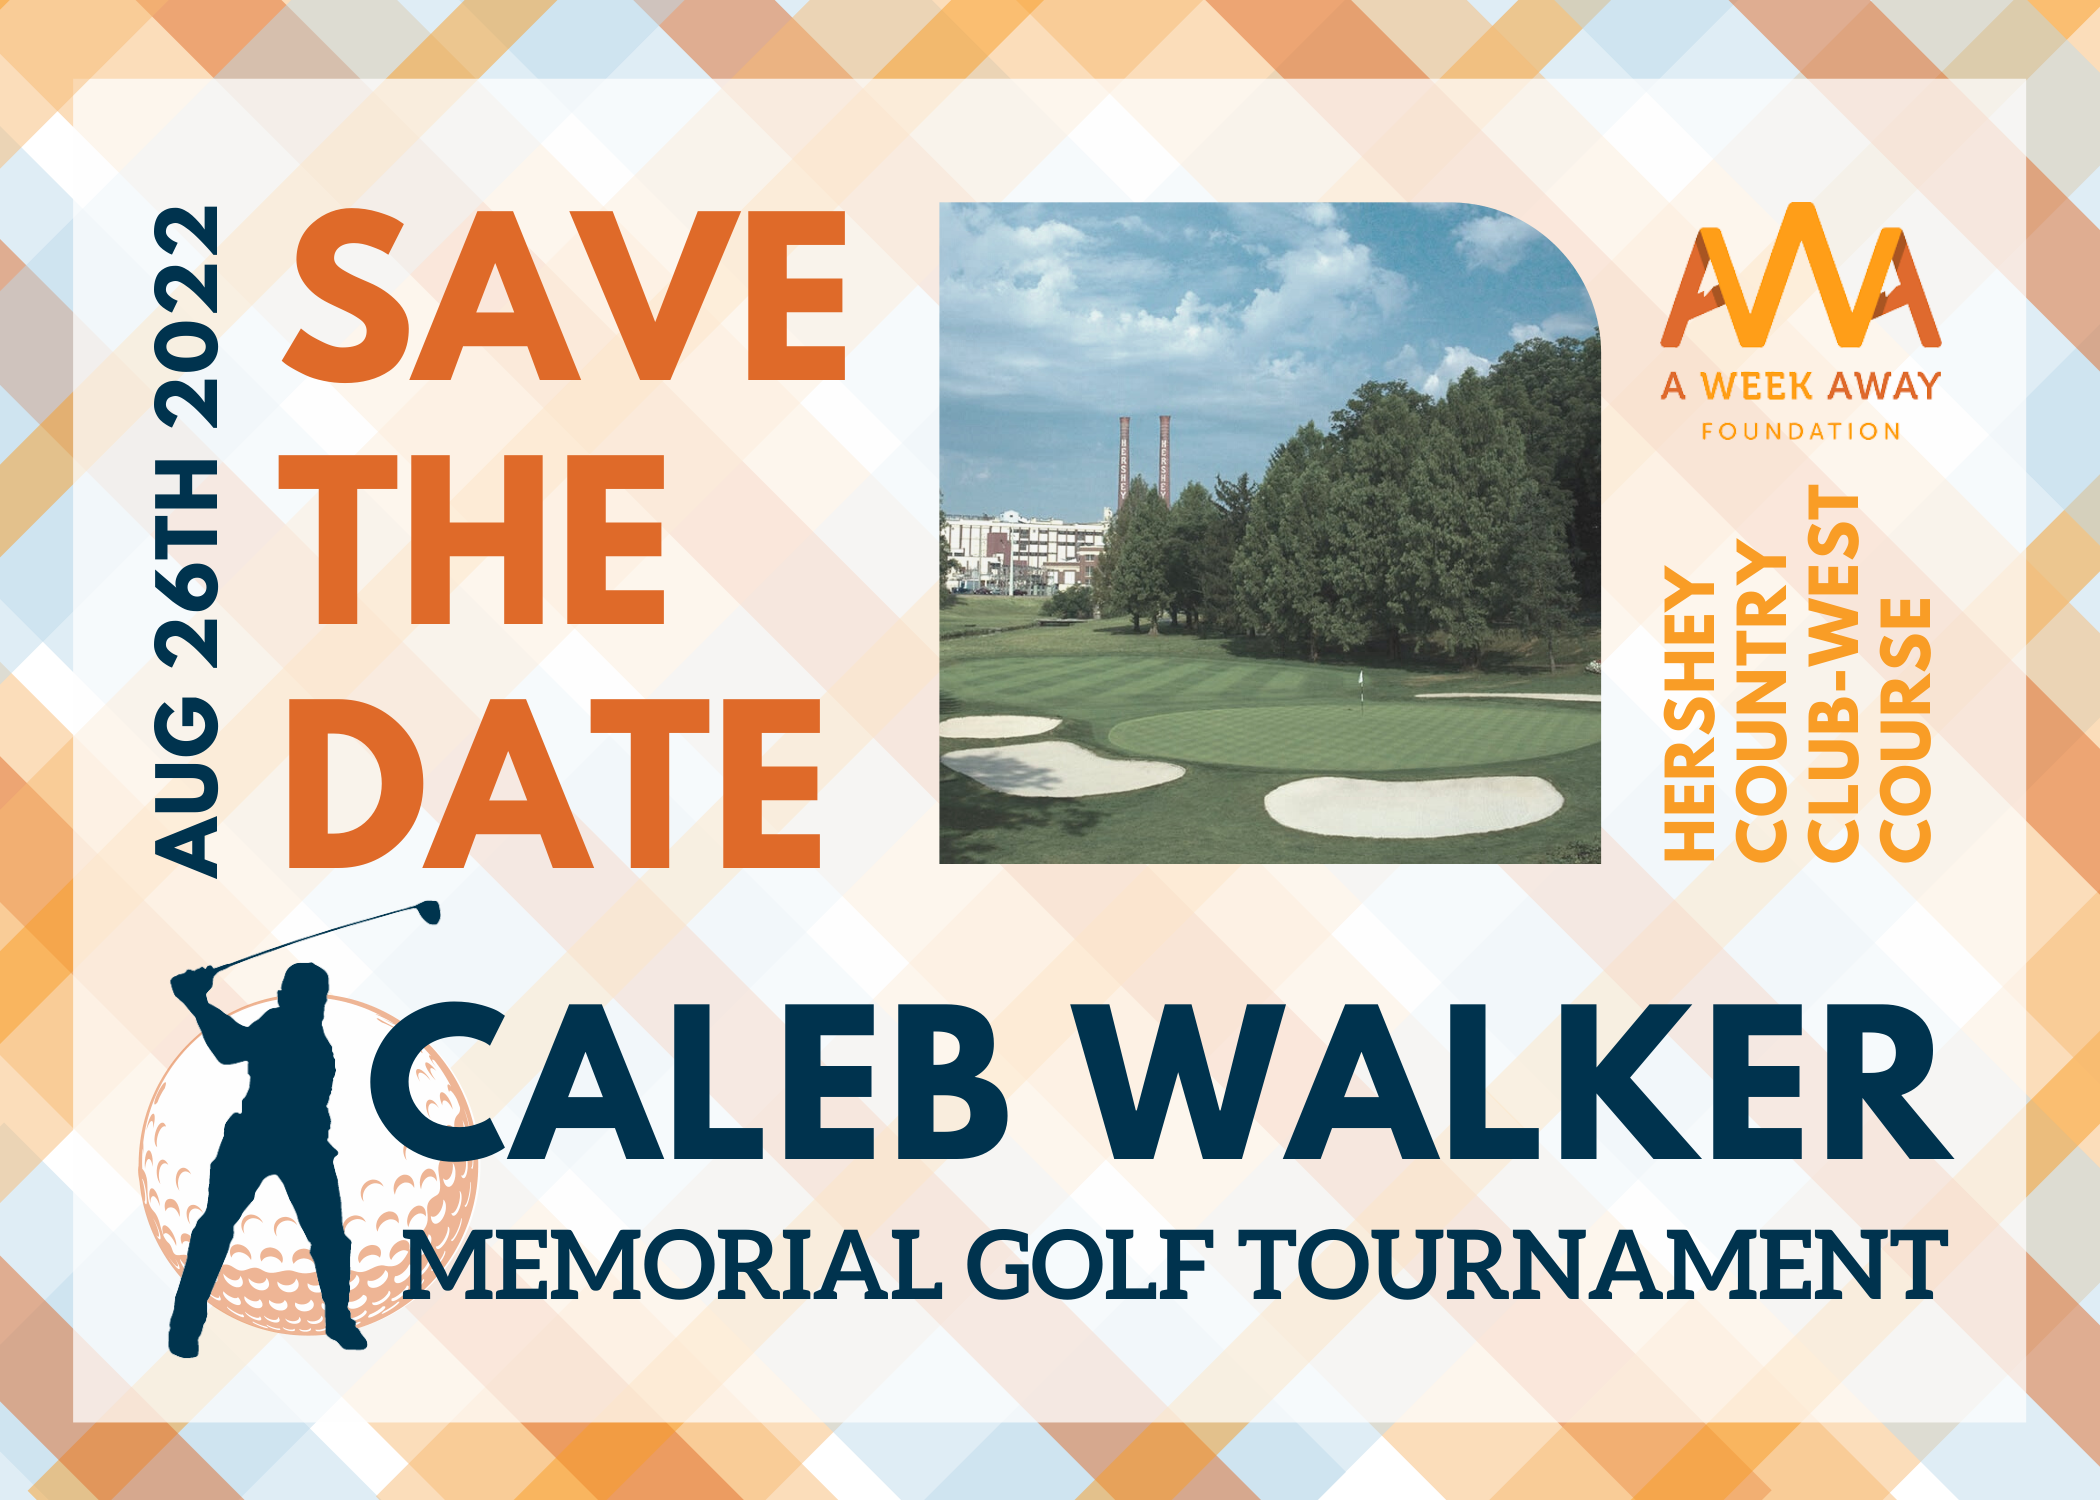 Caleb Walker Memorial Golf Tournament